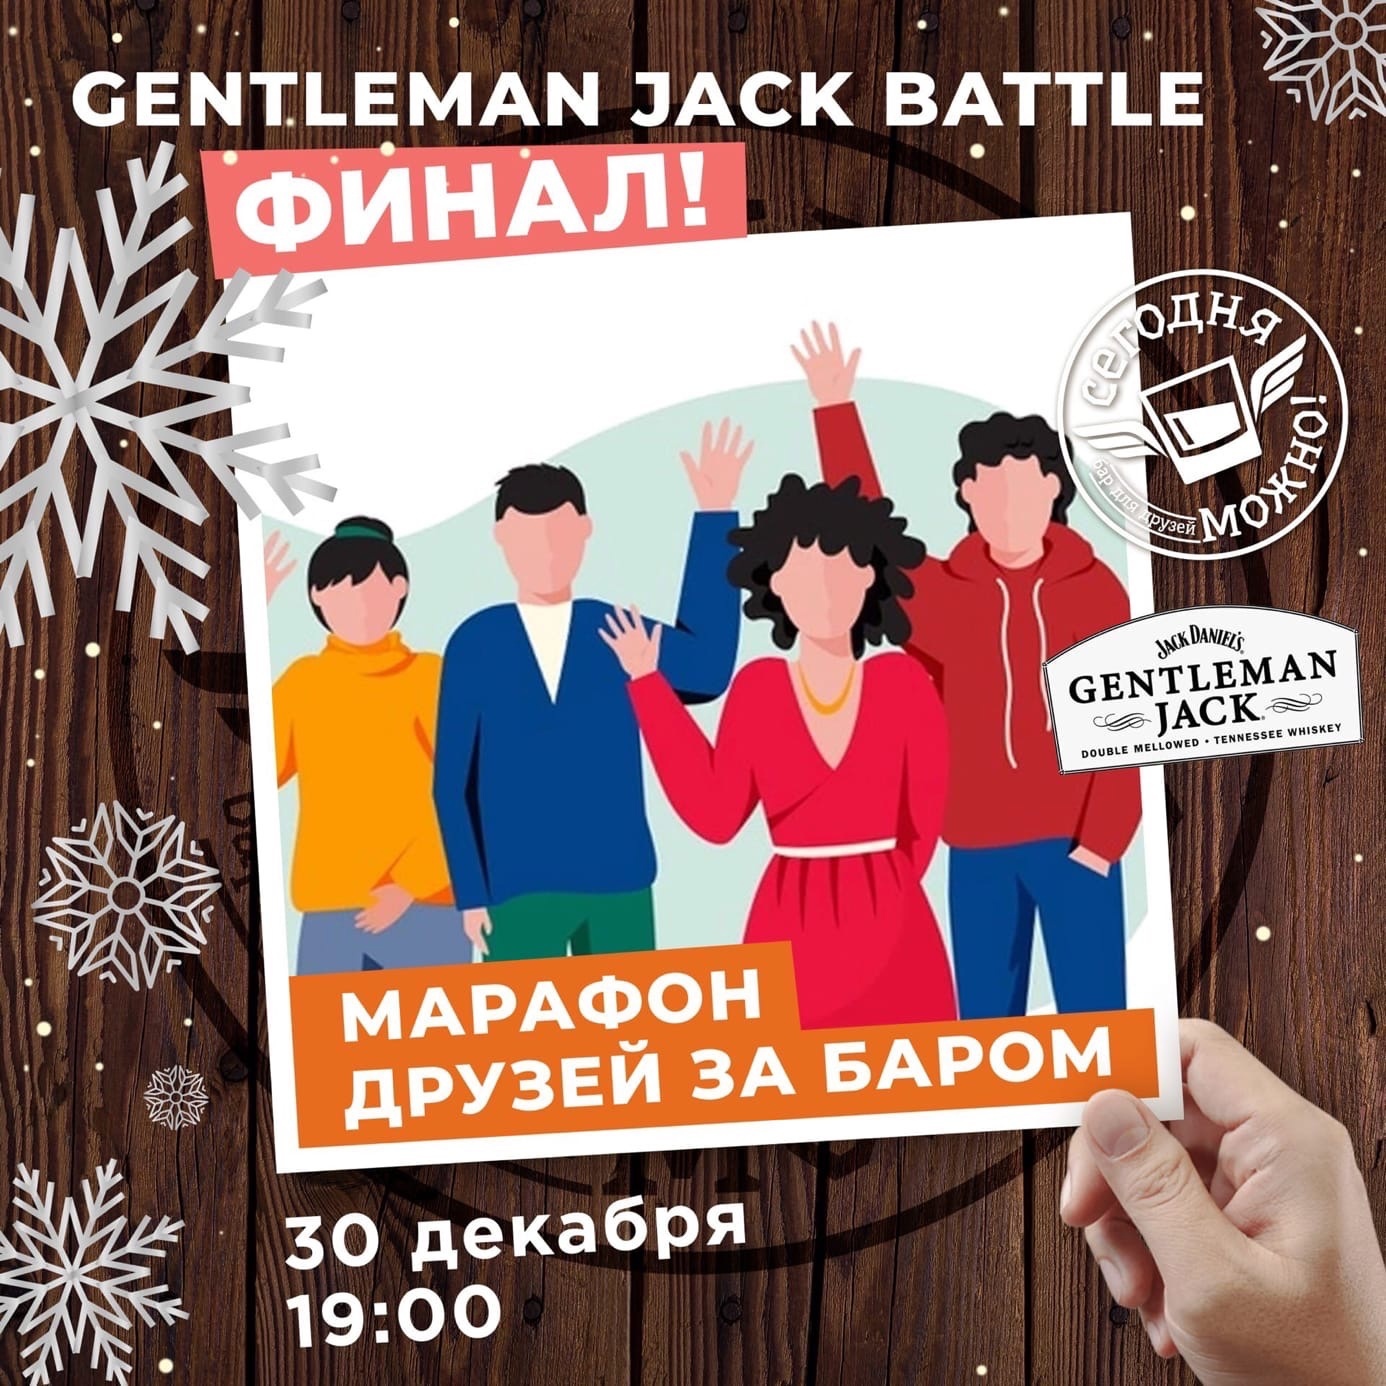 Афиша Ижевска — Gentleman Jack battle друзей за баром